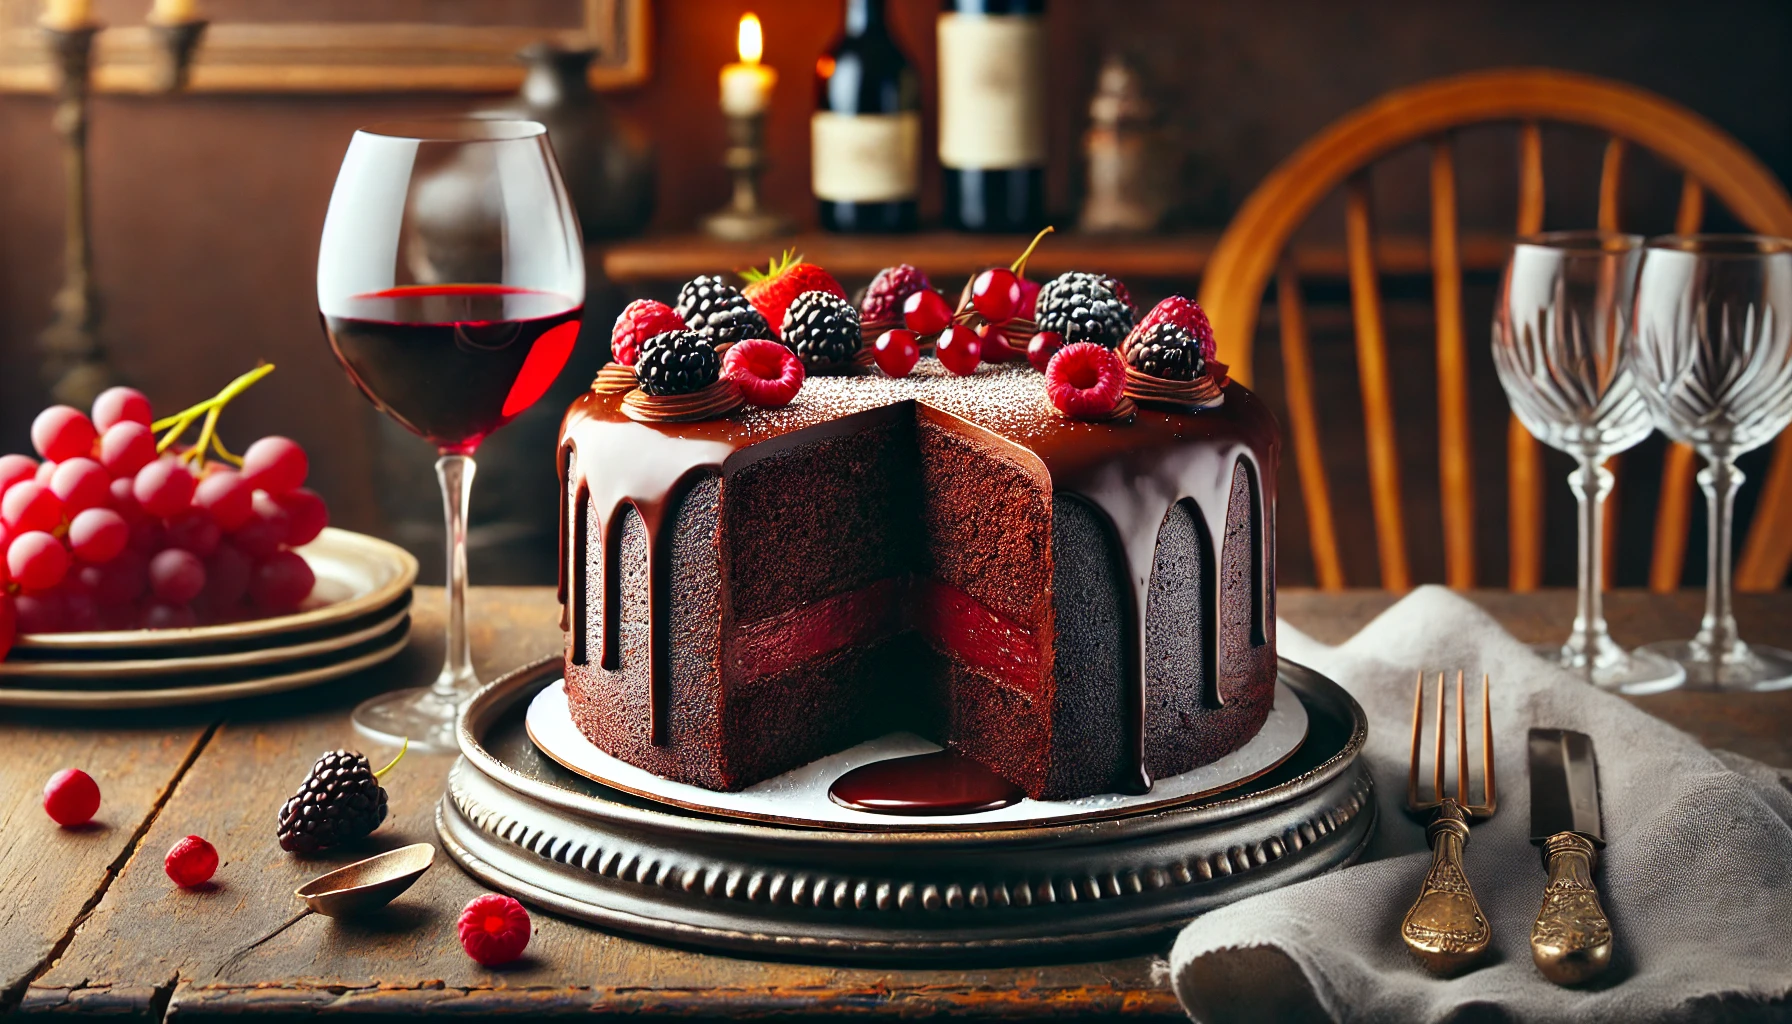 Rode Wijn Chocoladecake: Een Diepe, Rijke Chocoladecake met een Complexe Smaak